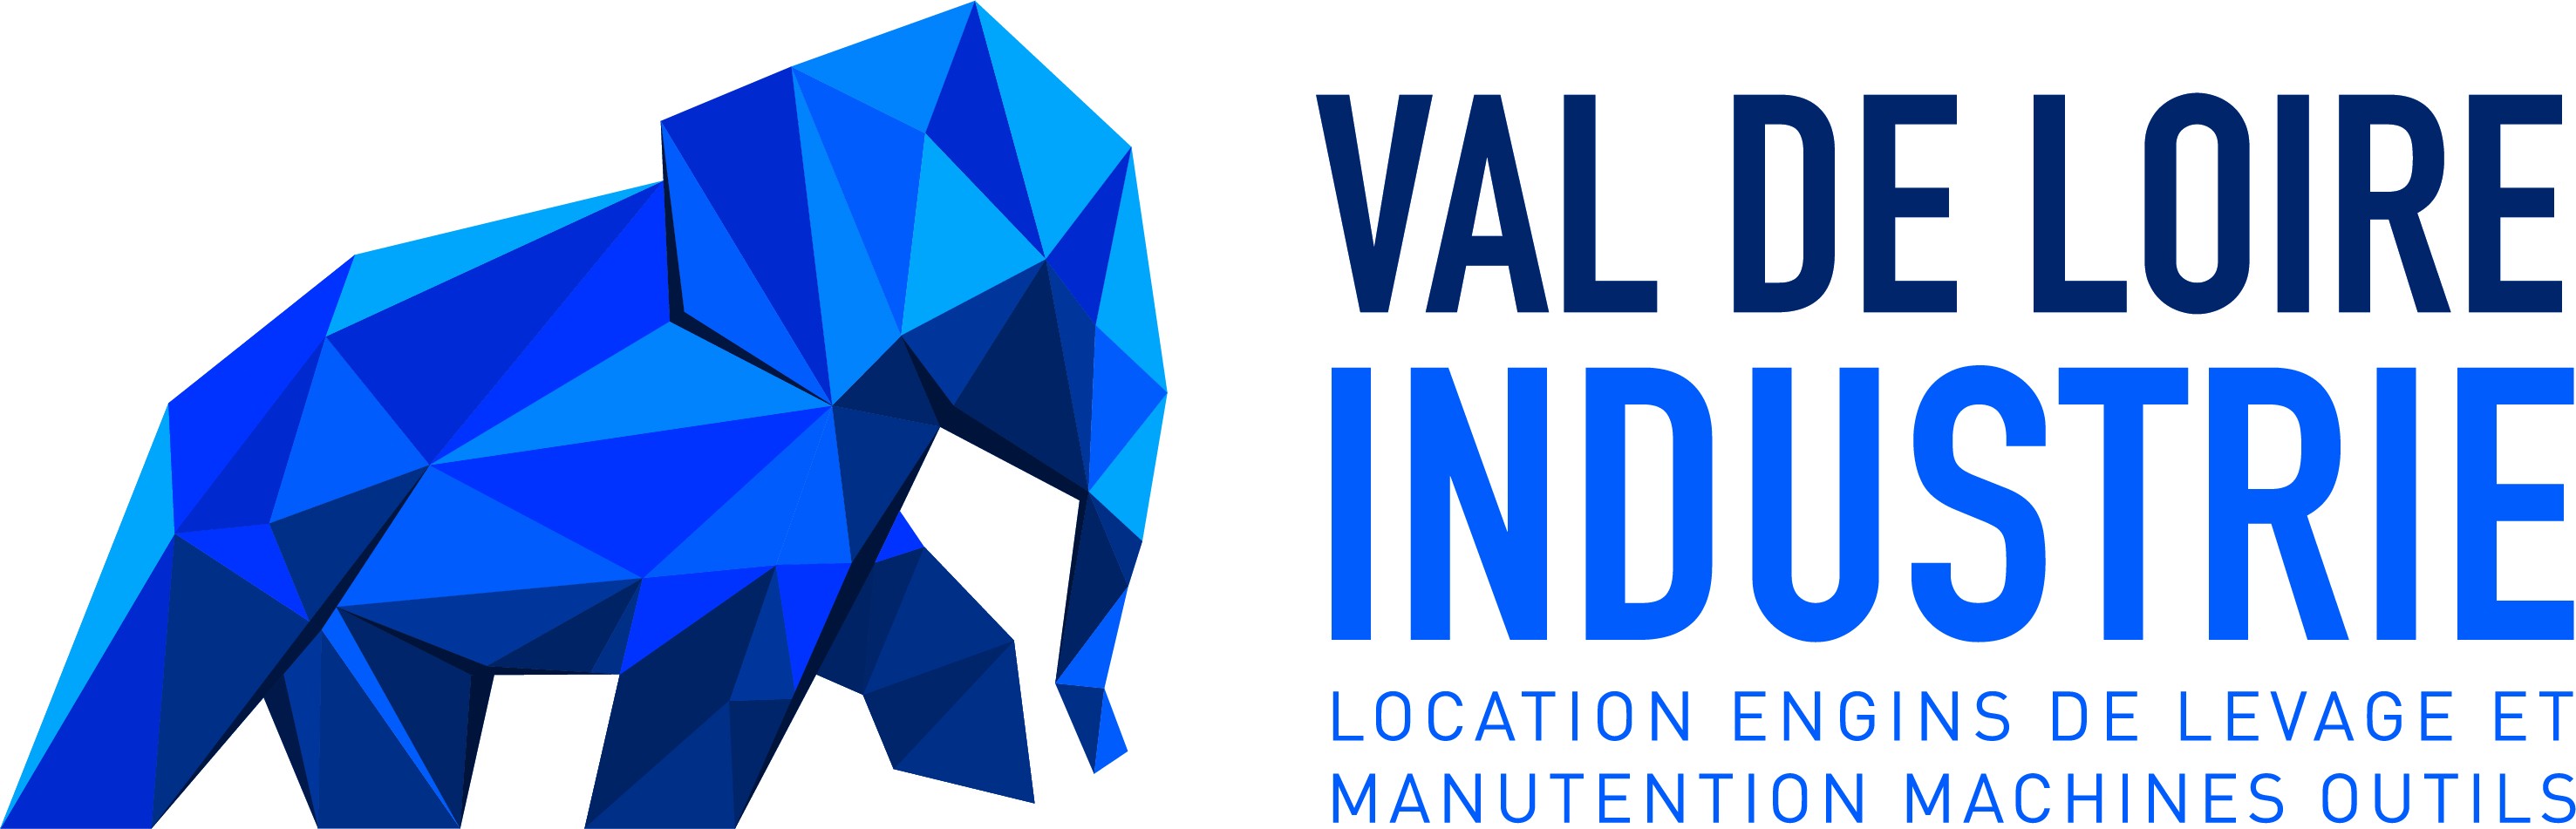 Val de Loire Industrie